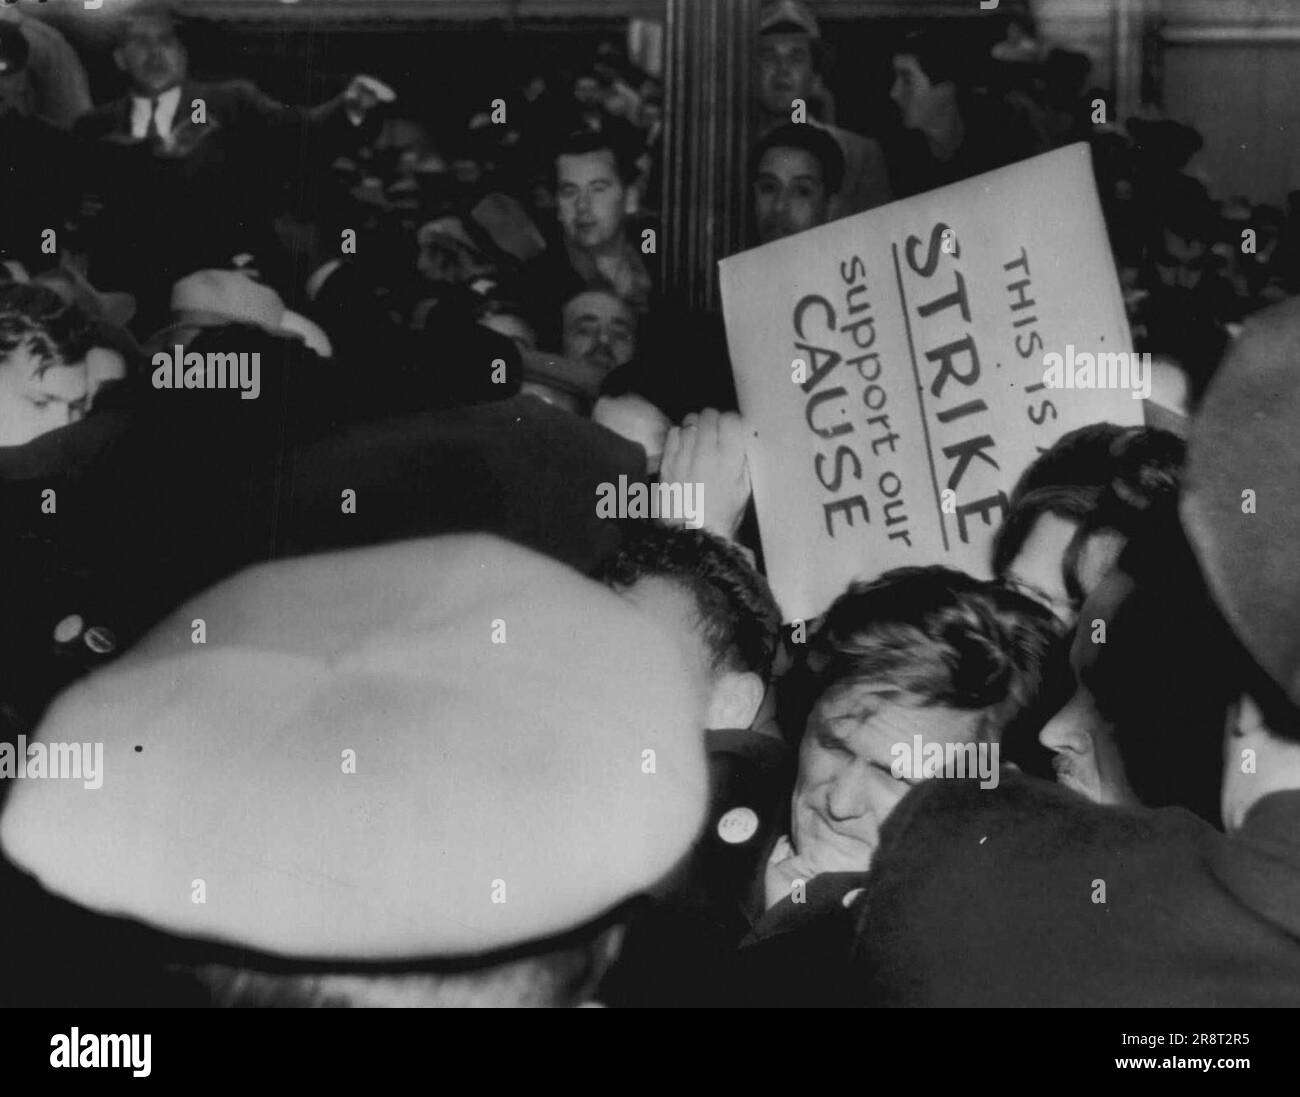 Scuffle auf der Streiklinie -- Polizei, AFL-Gewerkschafter und Zuschauer schnüffeln heute vor Hastings Laden hier in der ersten abtörichten Gewalt beim AFL-Protestgang. Notieren Sie sich den Ausdruck auf dem Busfahrer (unten rechts in der Mitte), während die Polizei in die Quell-Störung eindringt. 3. Dezember 1946. (Foto von AP Wirephoto). Stockfoto